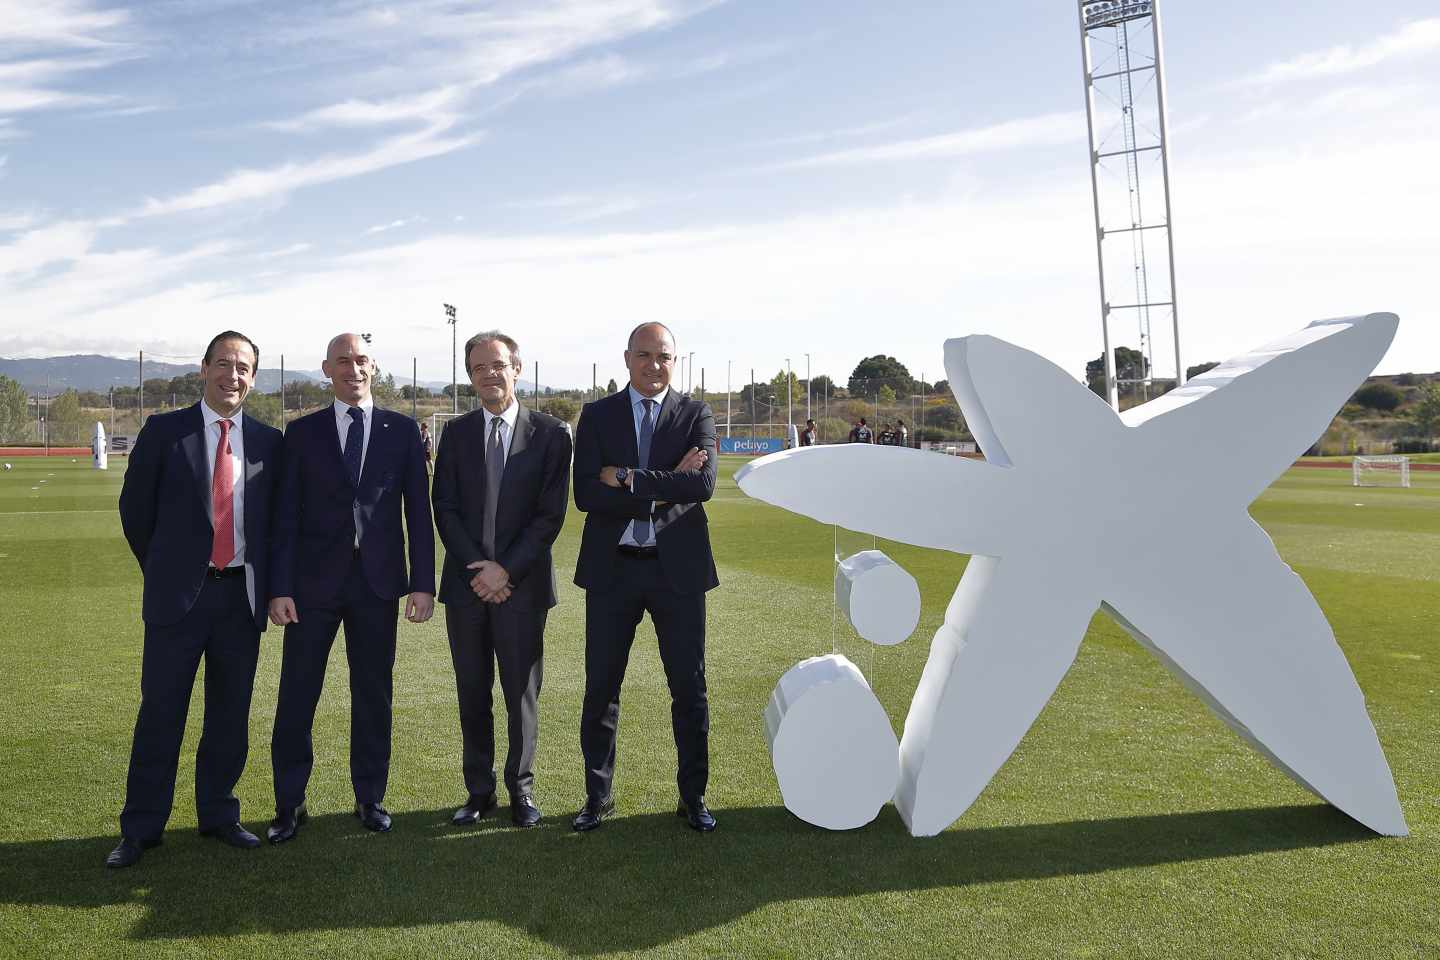 CaixaBank patrocinará a la selección española de fútbol hasta 2024.